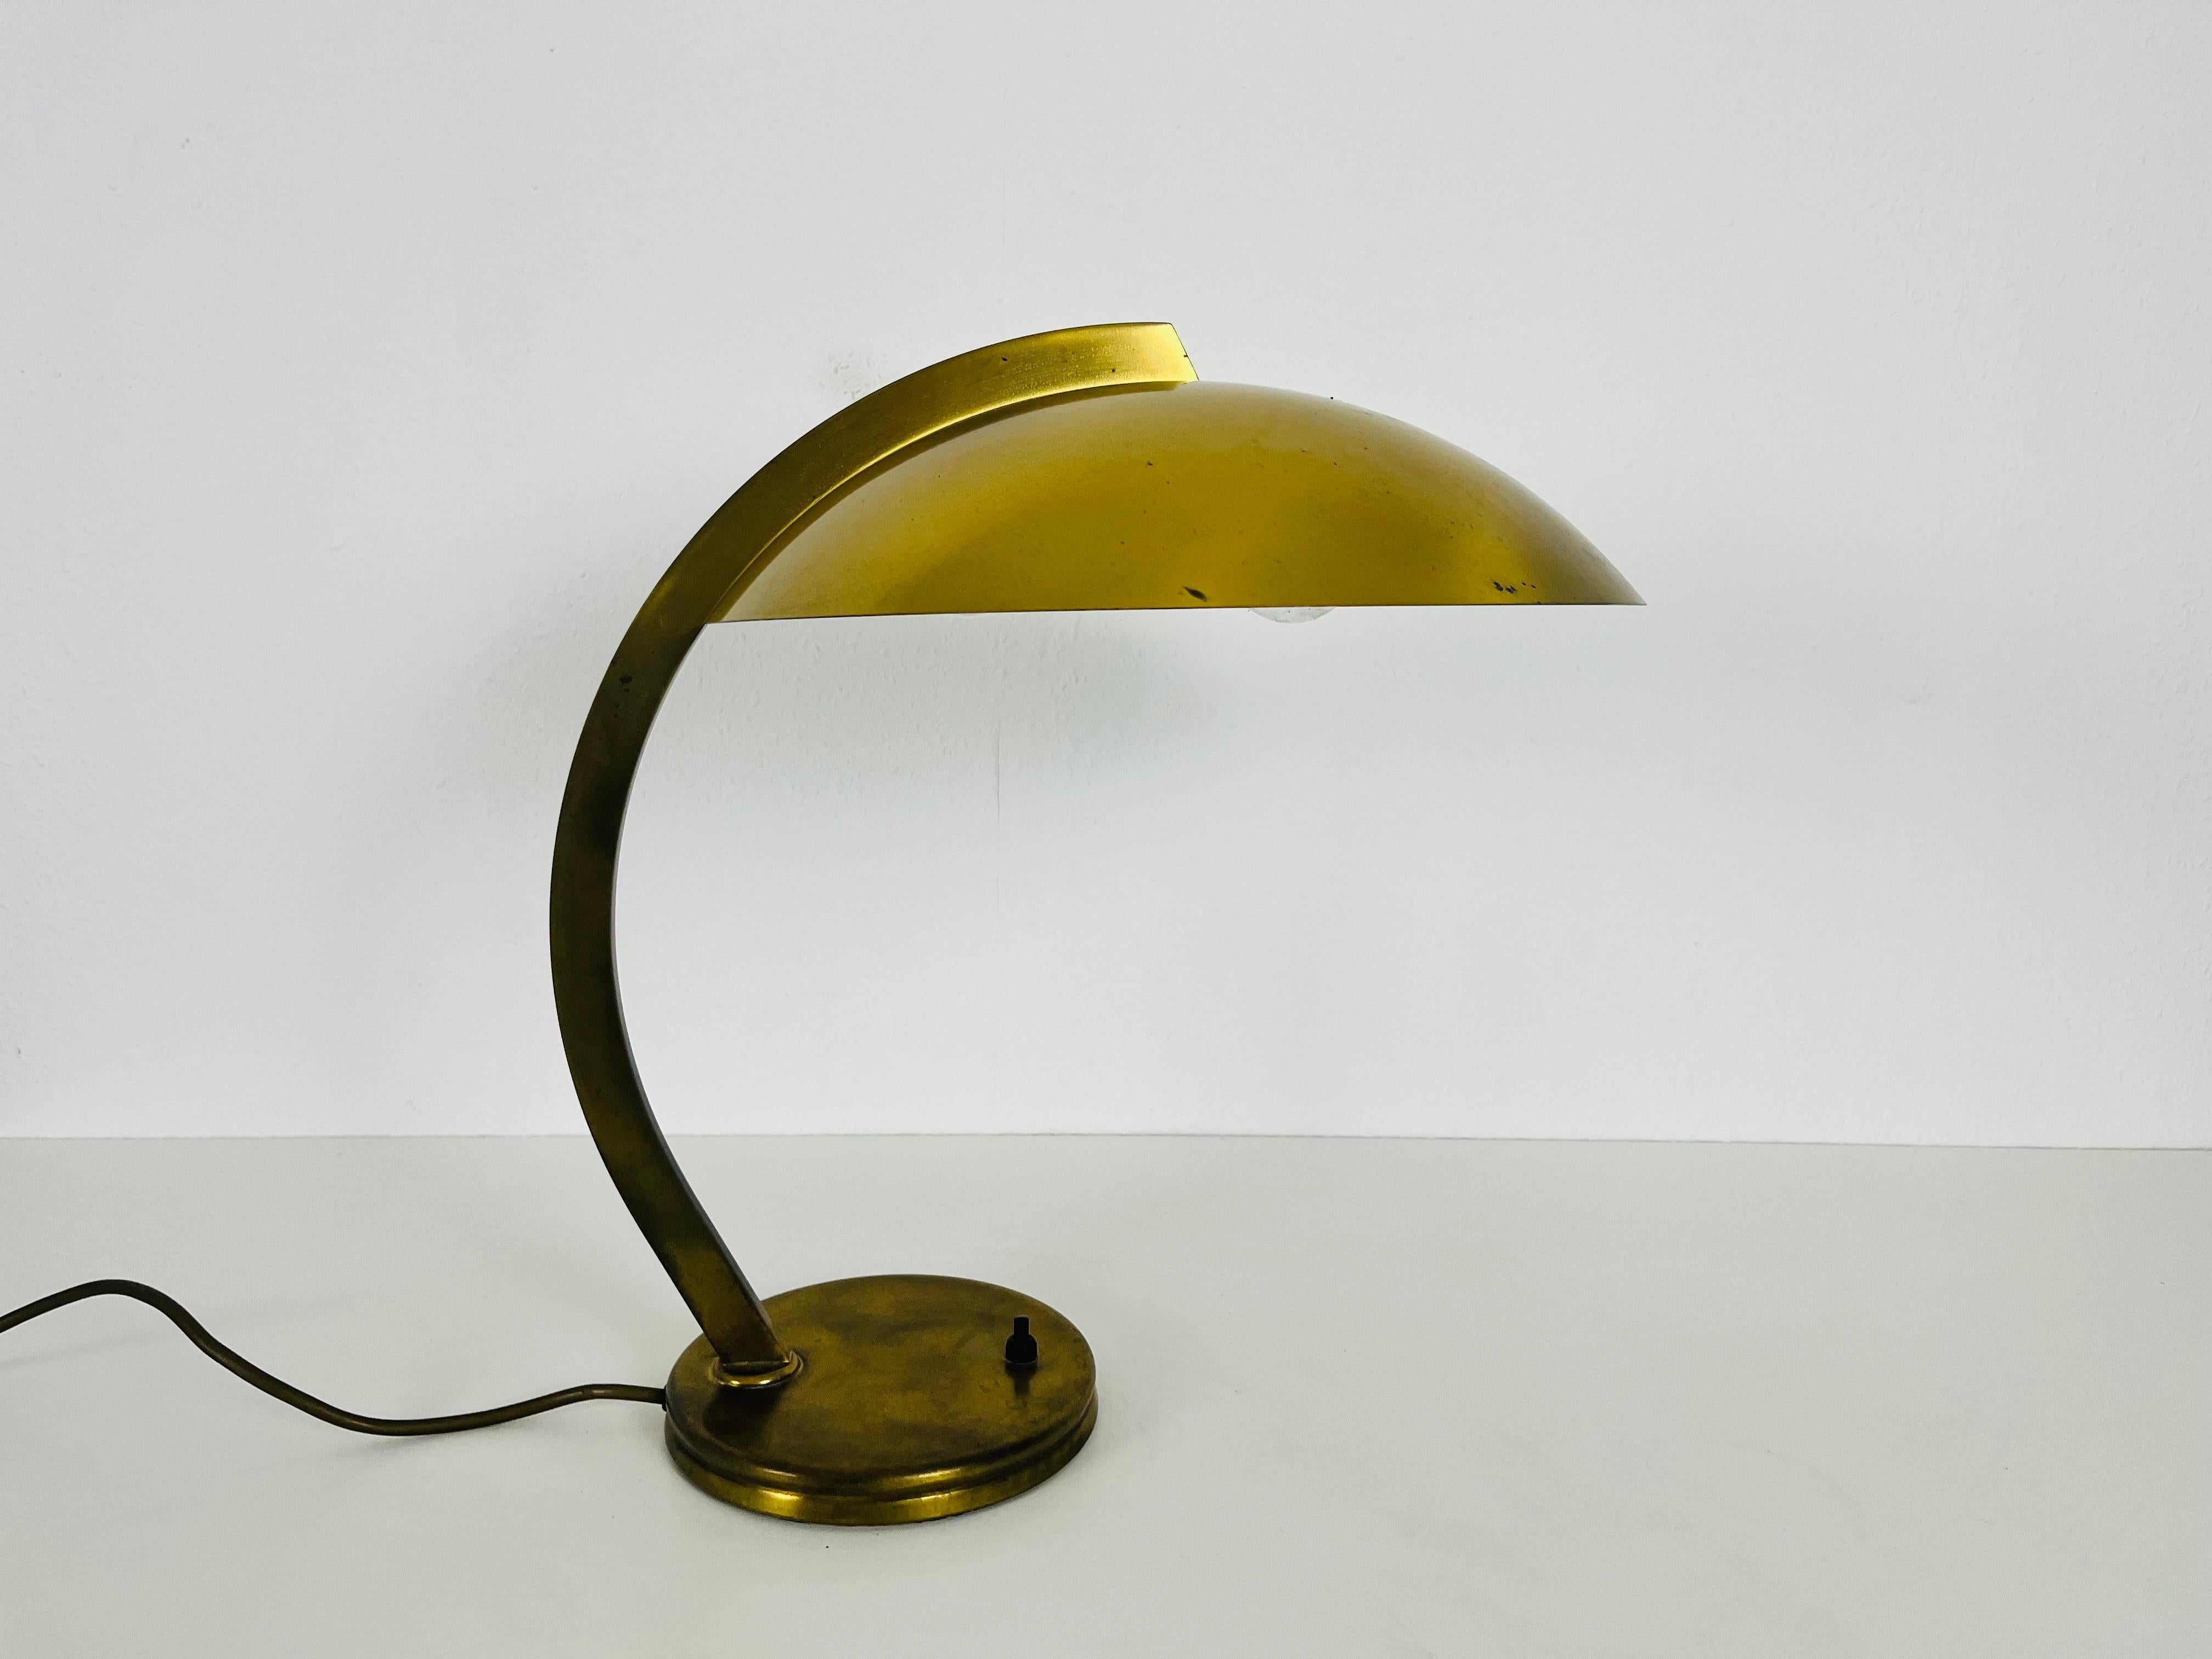 Une lampe de table Hillebrand fabriquée en Allemagne dans les années 1960. Fabriqué en laiton massif.

La lampe nécessite une ampoule E27 (US E26). Fonctionne avec les deux 220V/120V. Bon état vintage.

Expédition express gratuite dans le monde